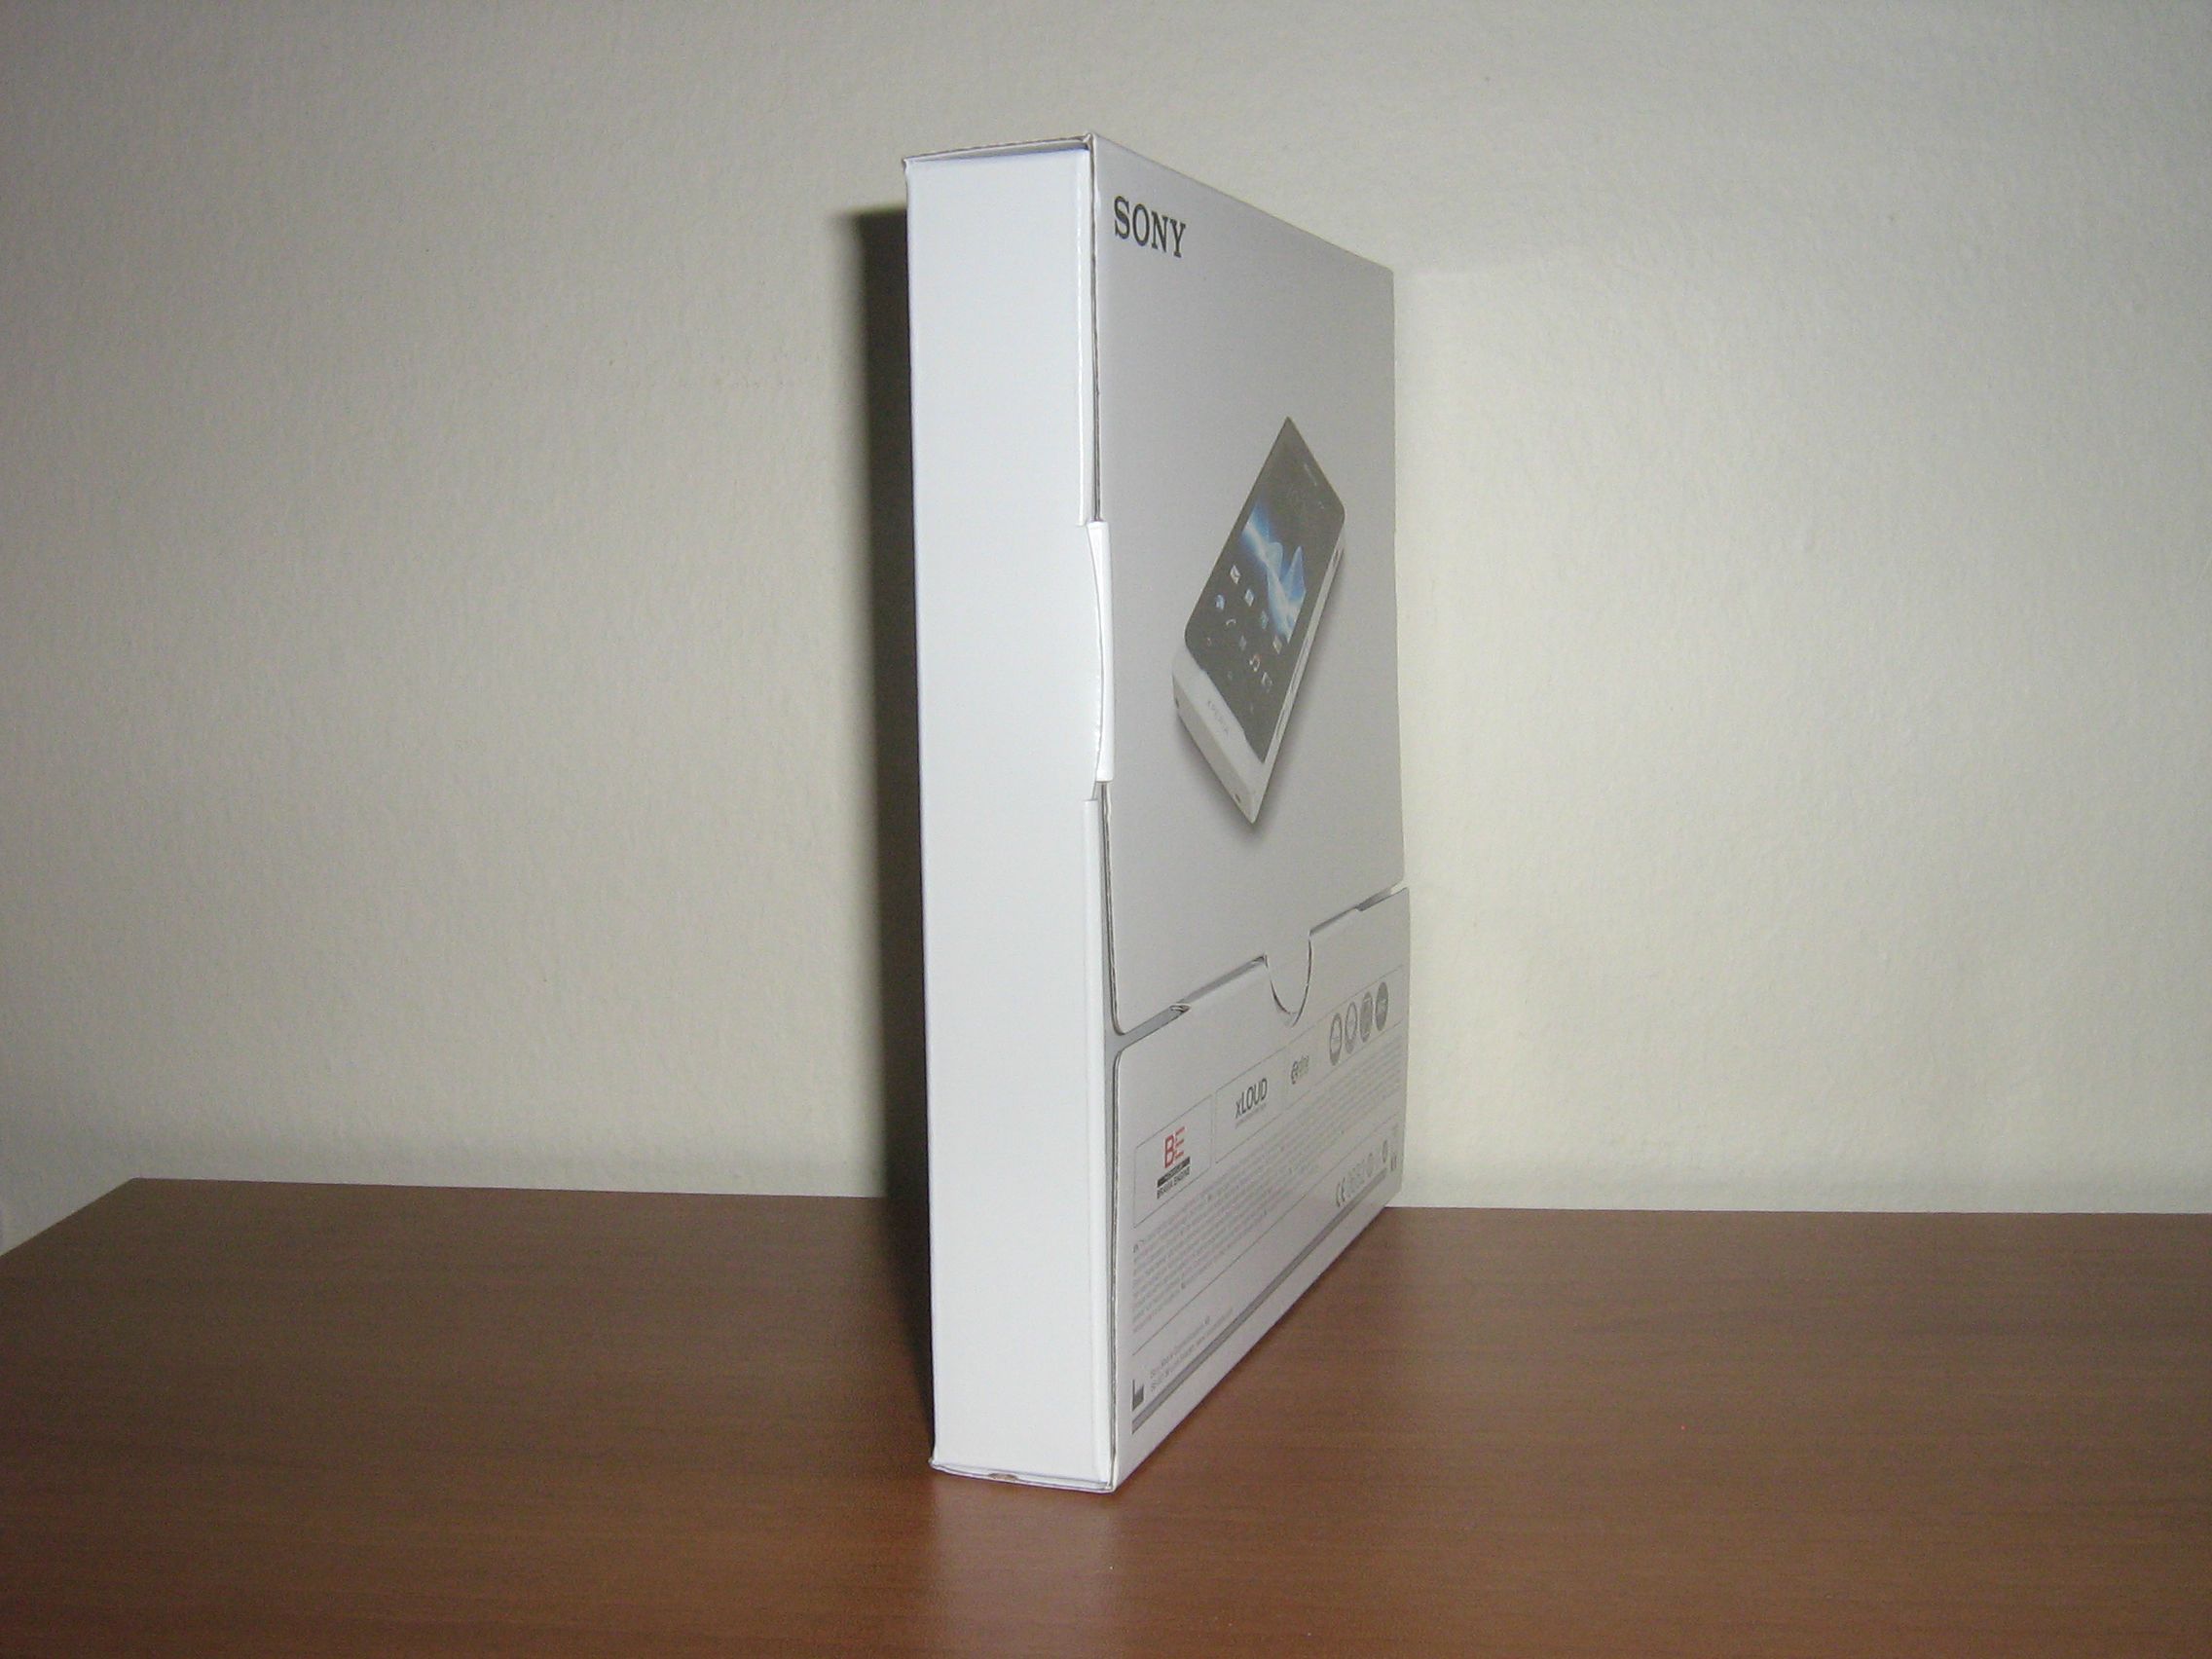  Sony Xperia Sola İncelemesi